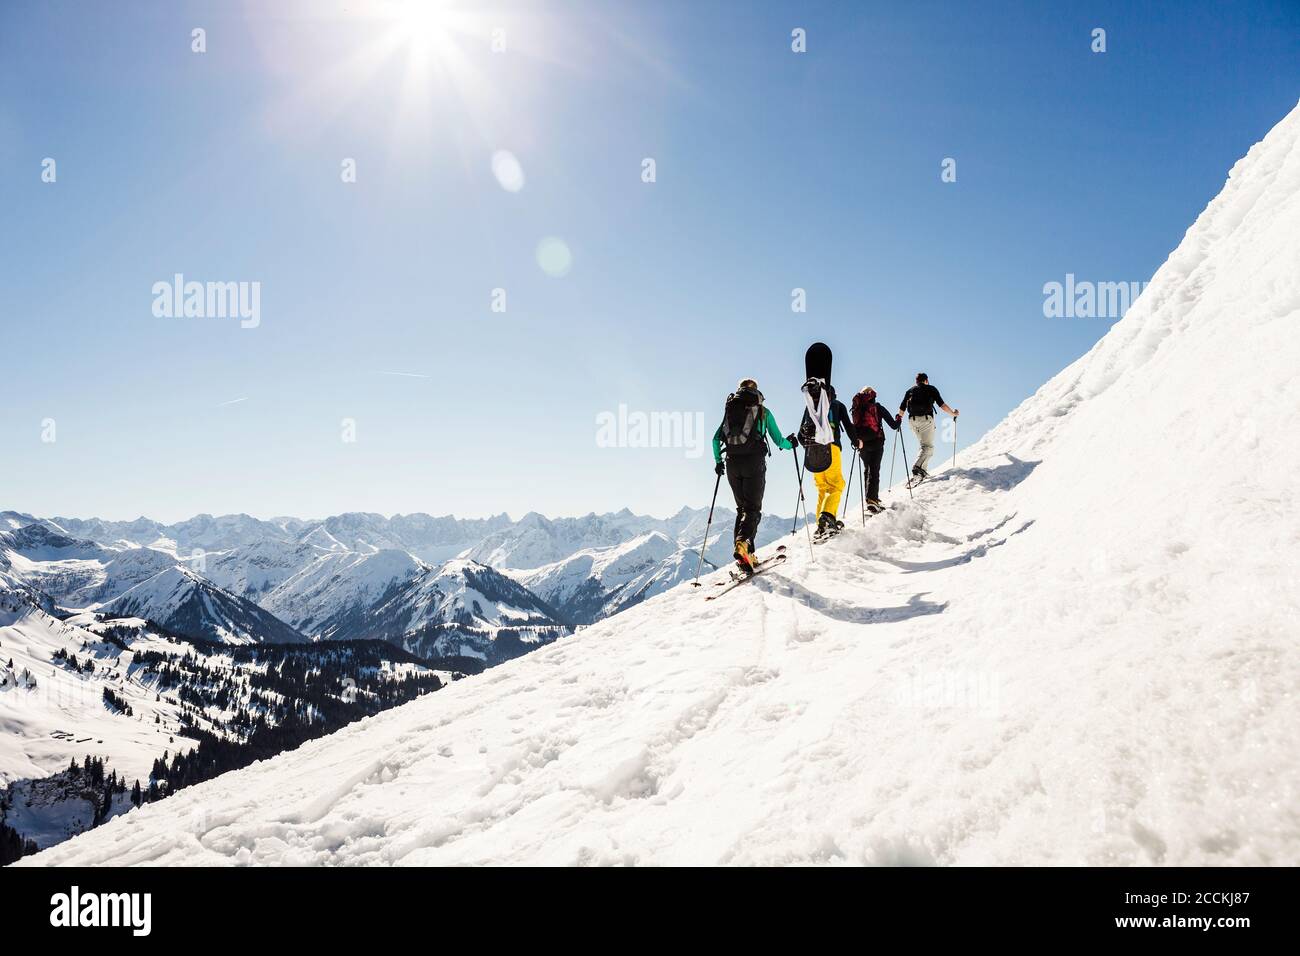 Group of friends ski touring up to a mountain peak, Achenkirch, Austria Stock Photo